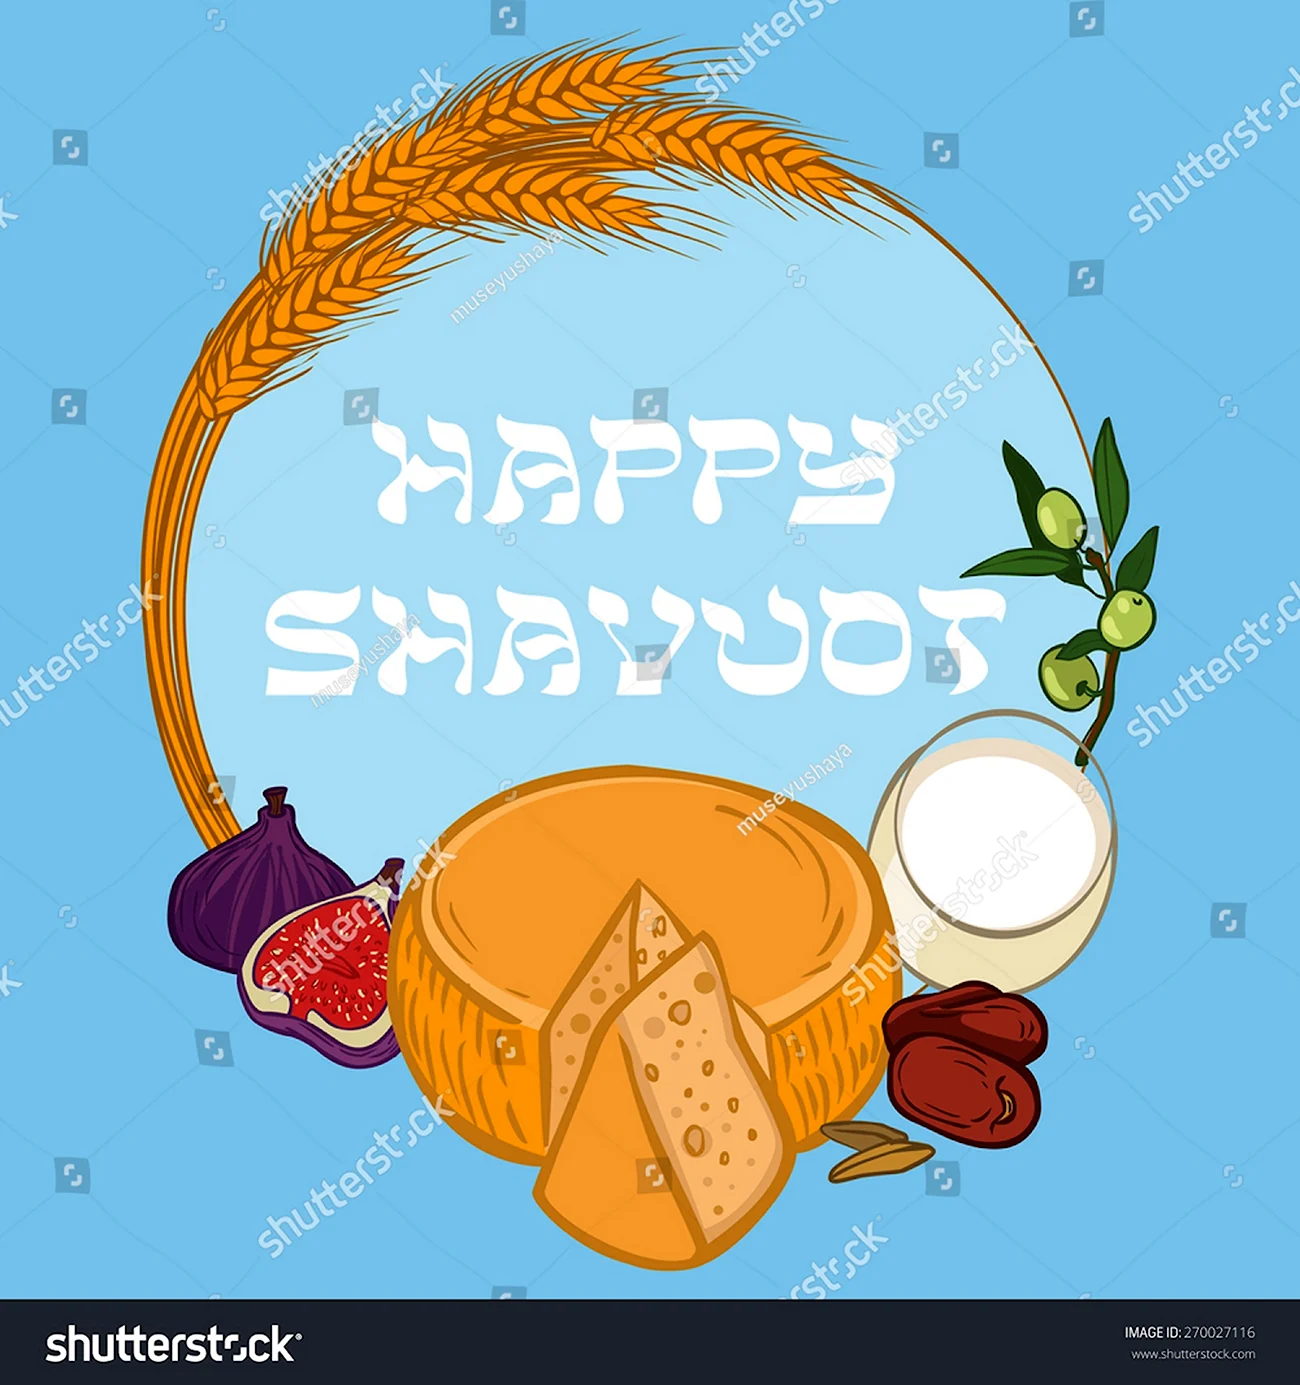 Еврейский праздник Шавуот. Поздравление